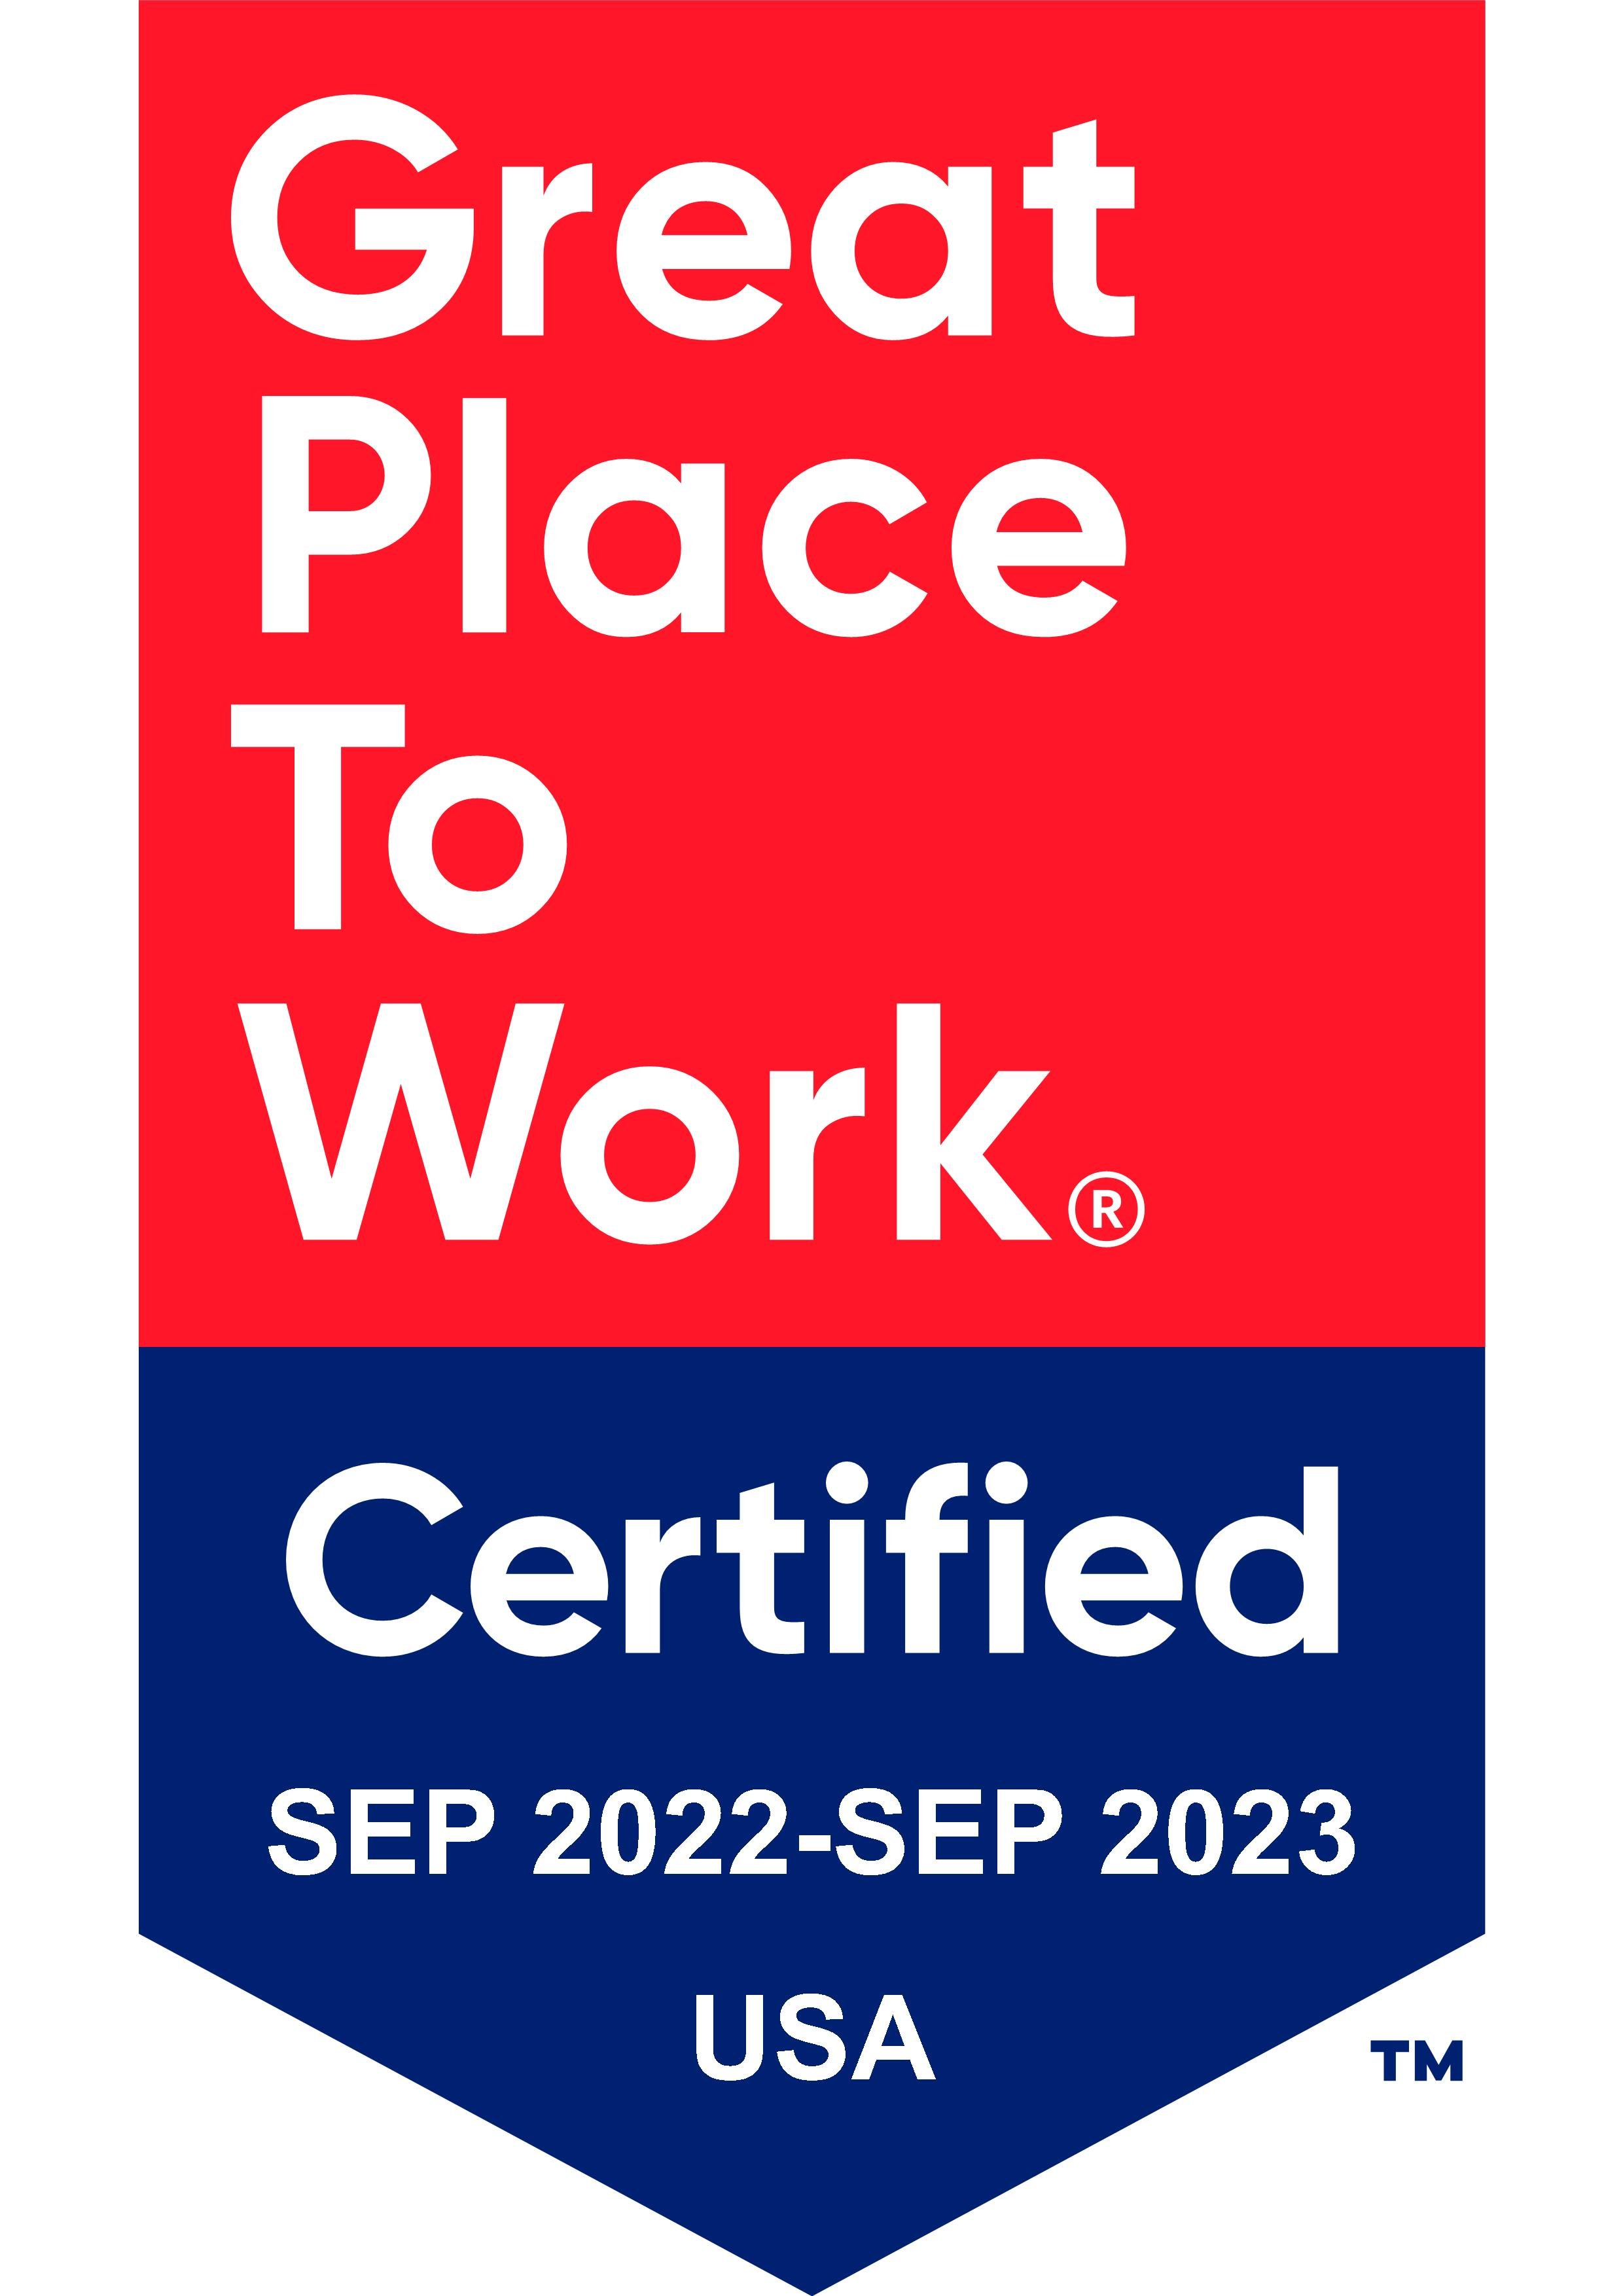 Association_Management_Group_2022_Certification_Badge.jpg